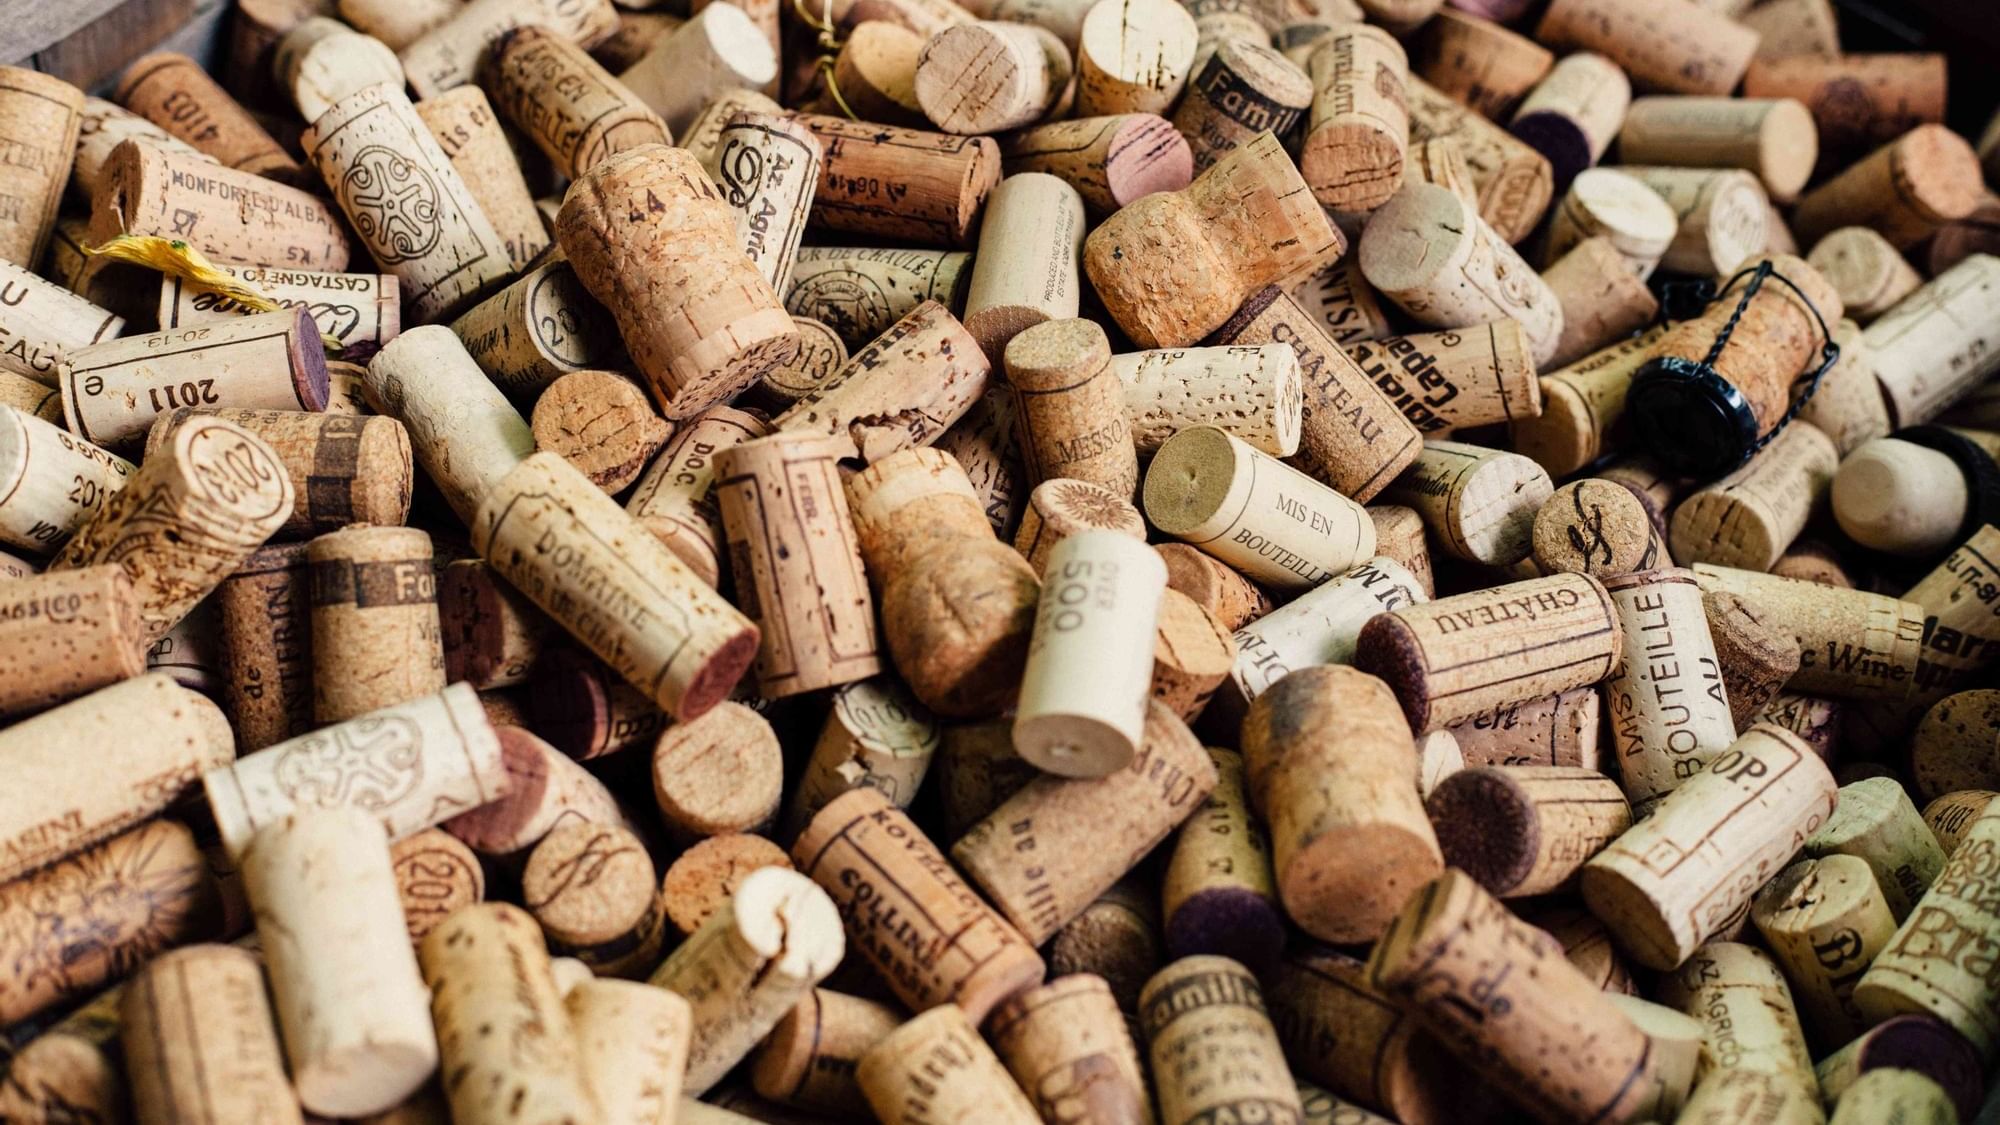 Set of wine bottle corks at The Originals Hotels